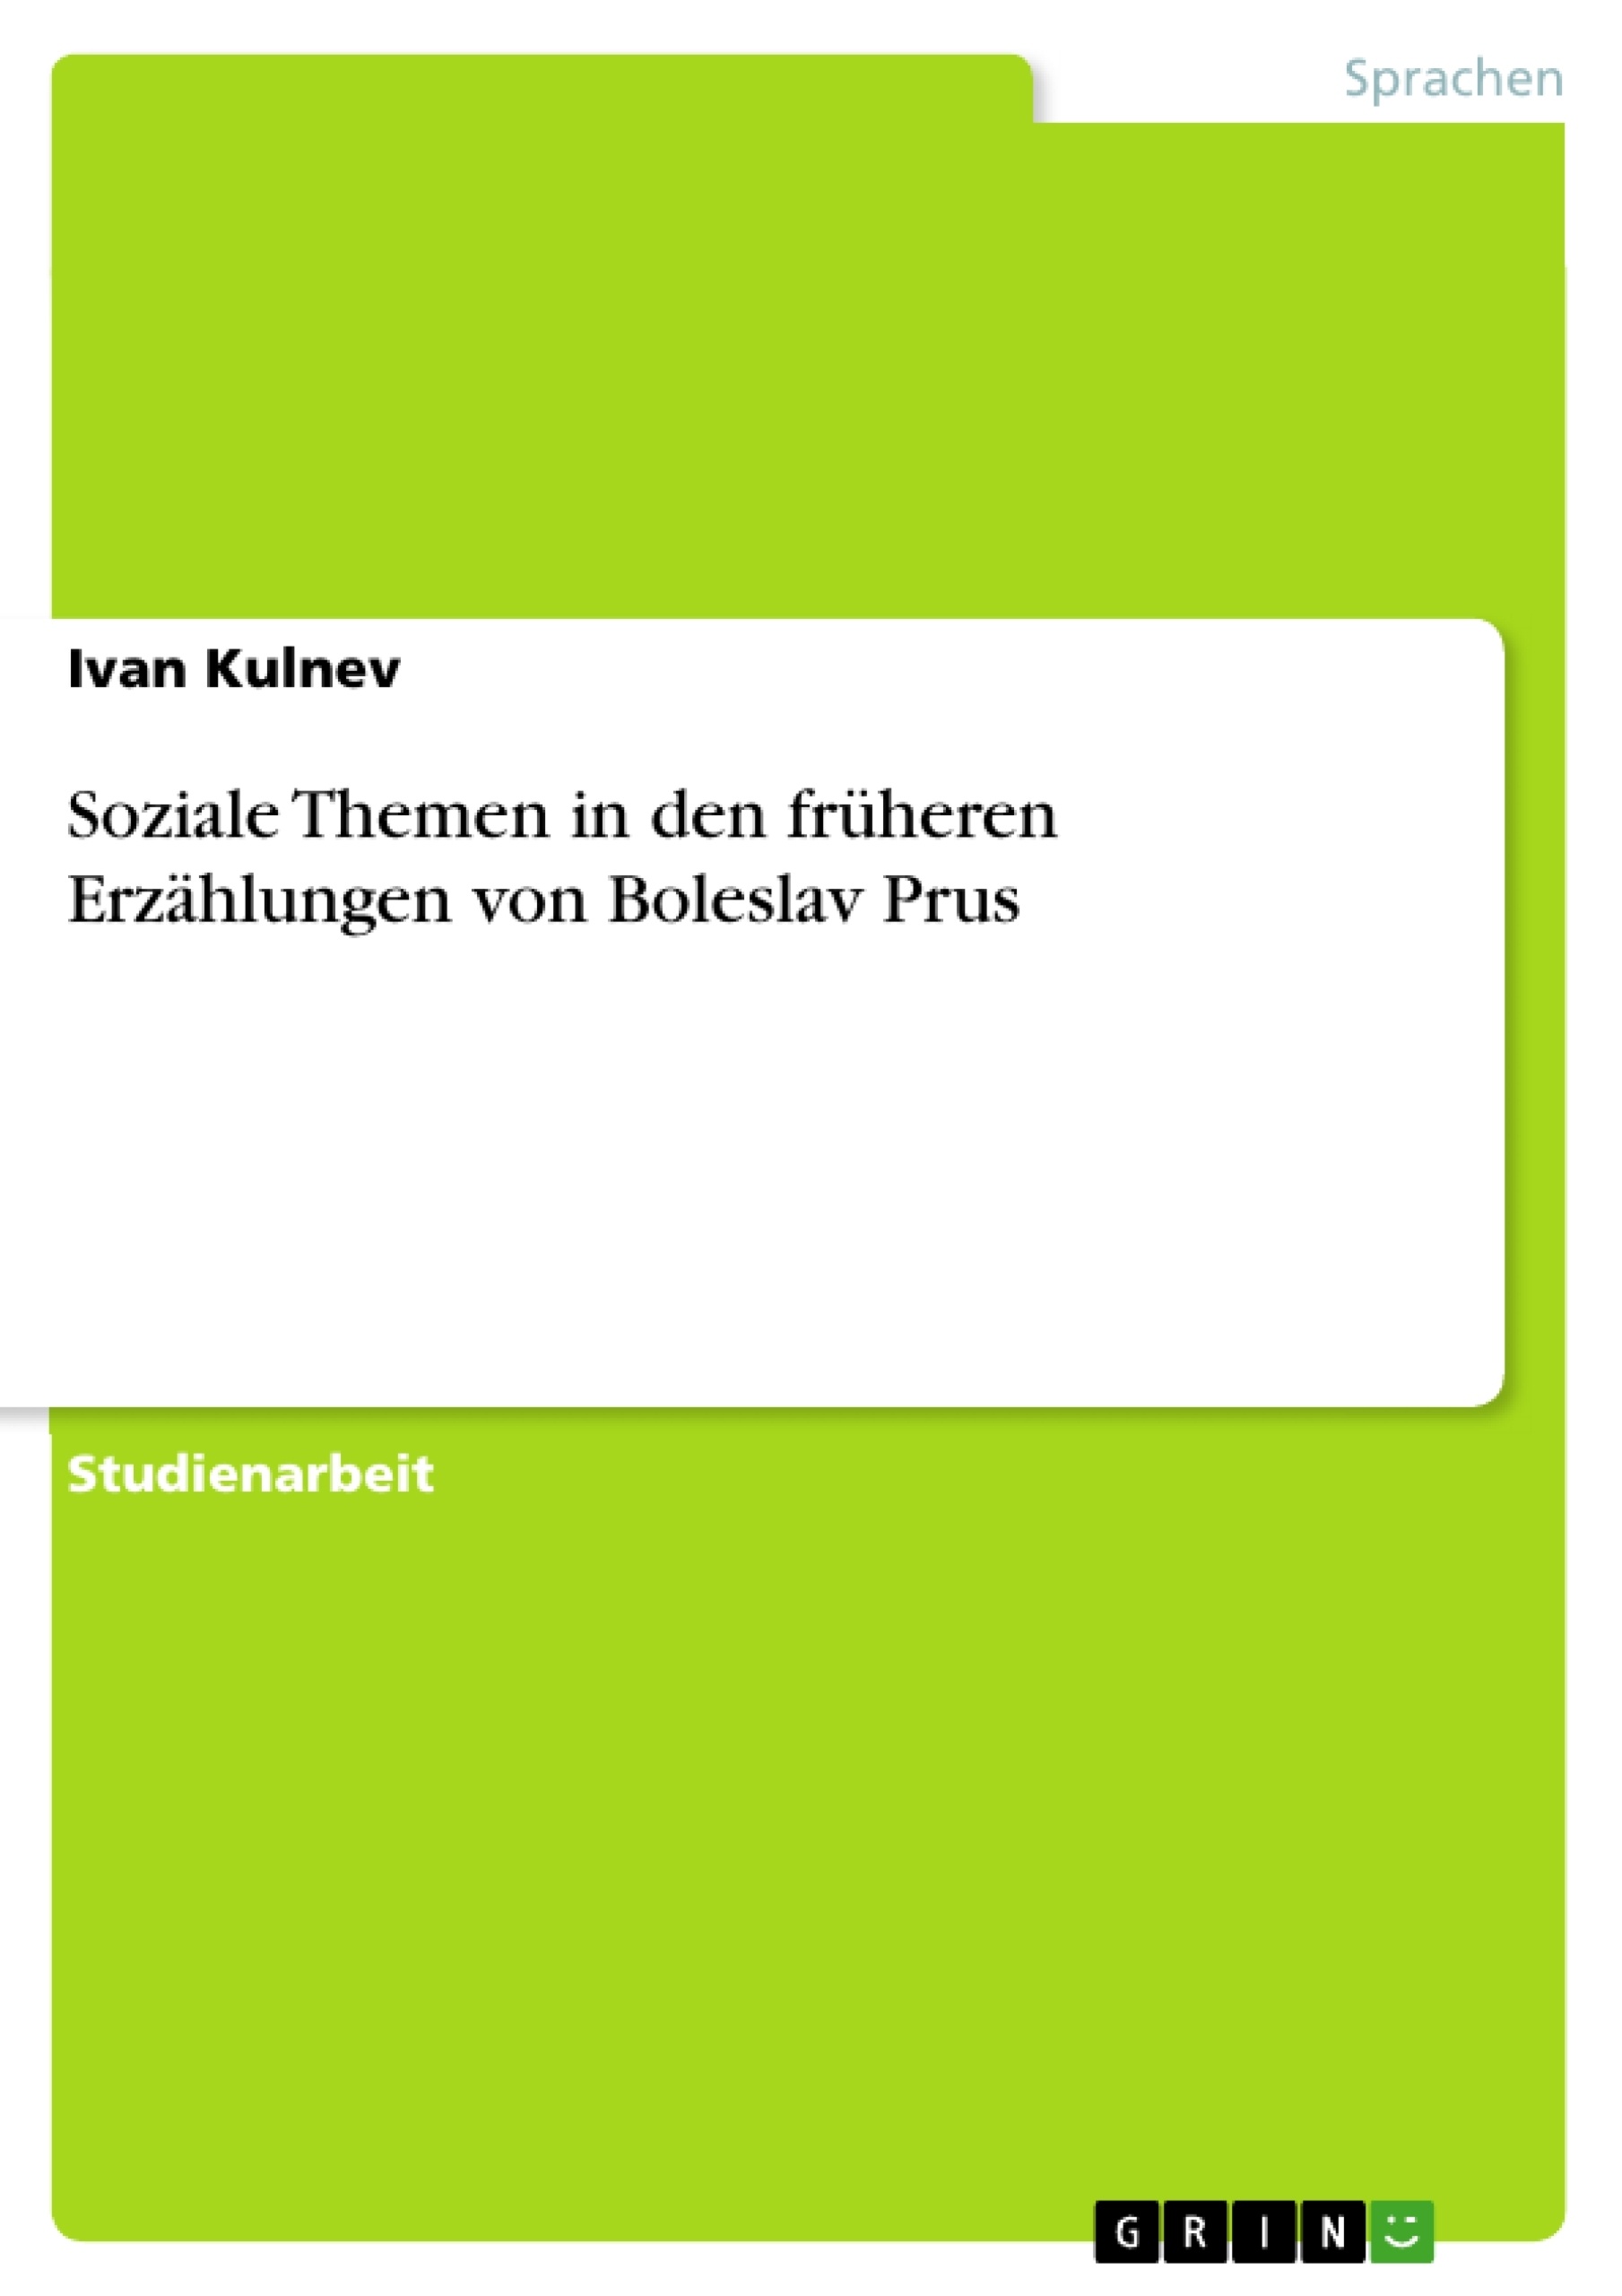 Titel: Soziale Themen in den früheren Erzählungen von Boleslav Prus